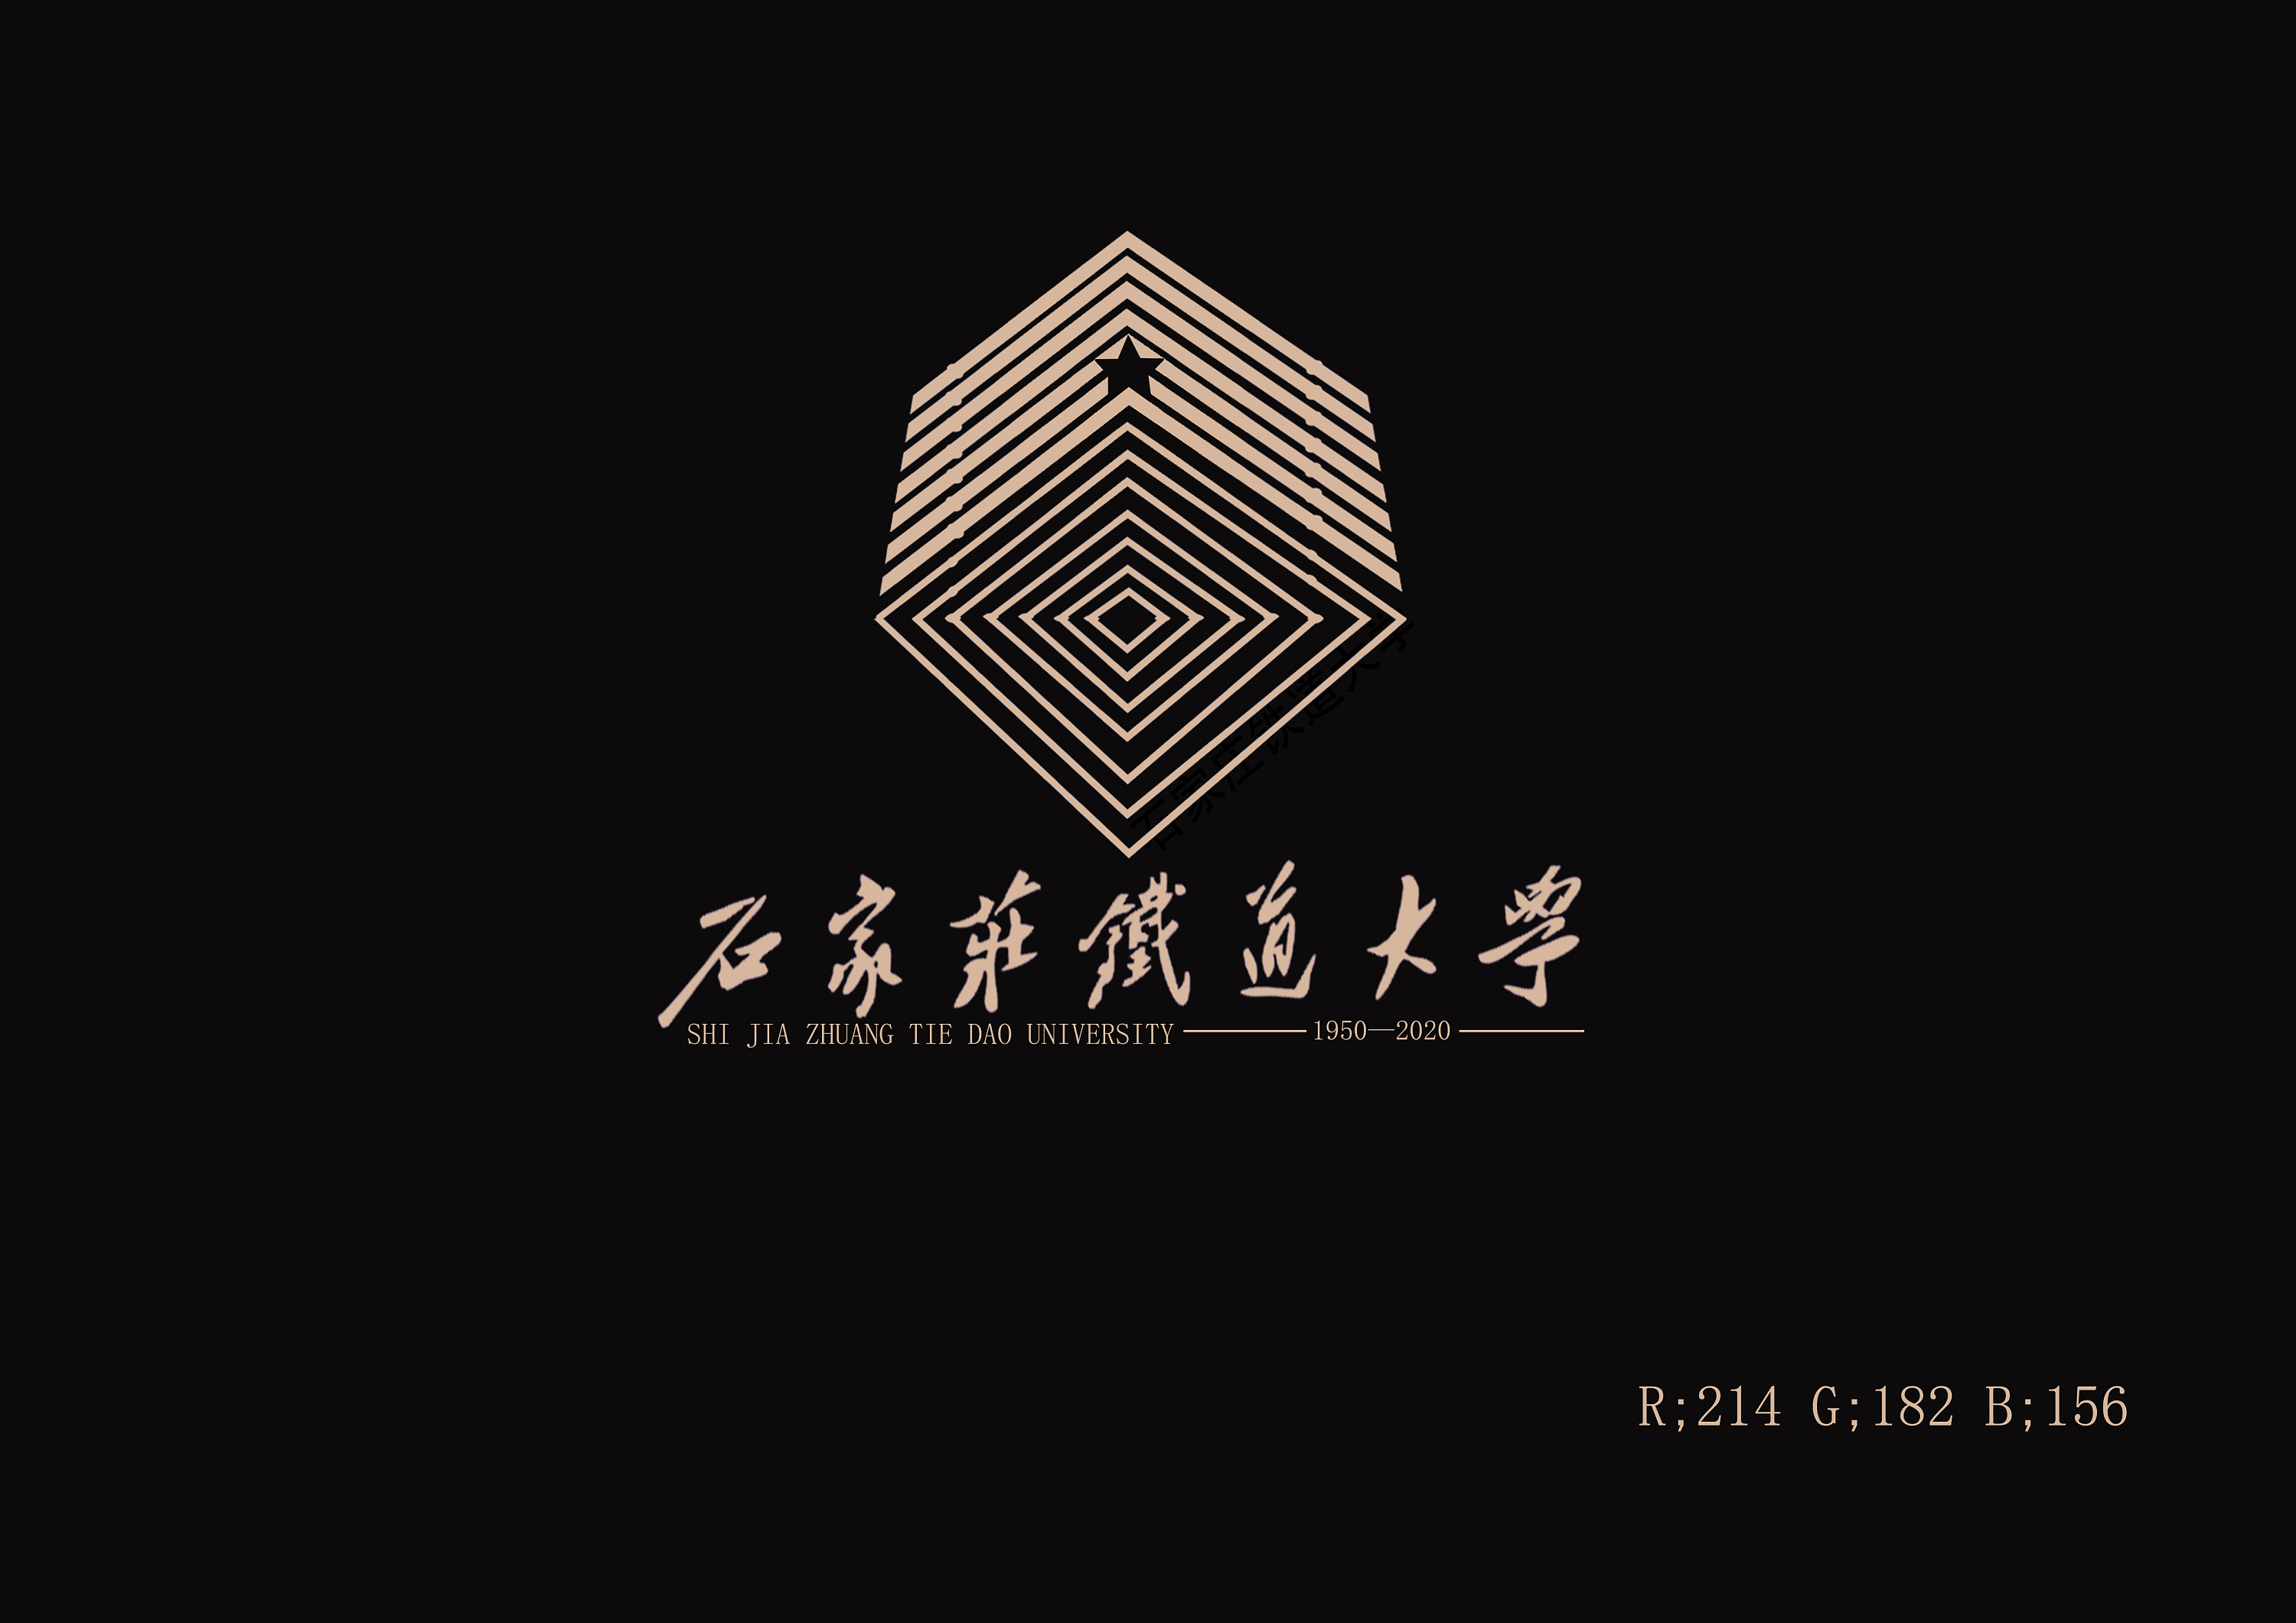 石家庄铁道大学校庆logo